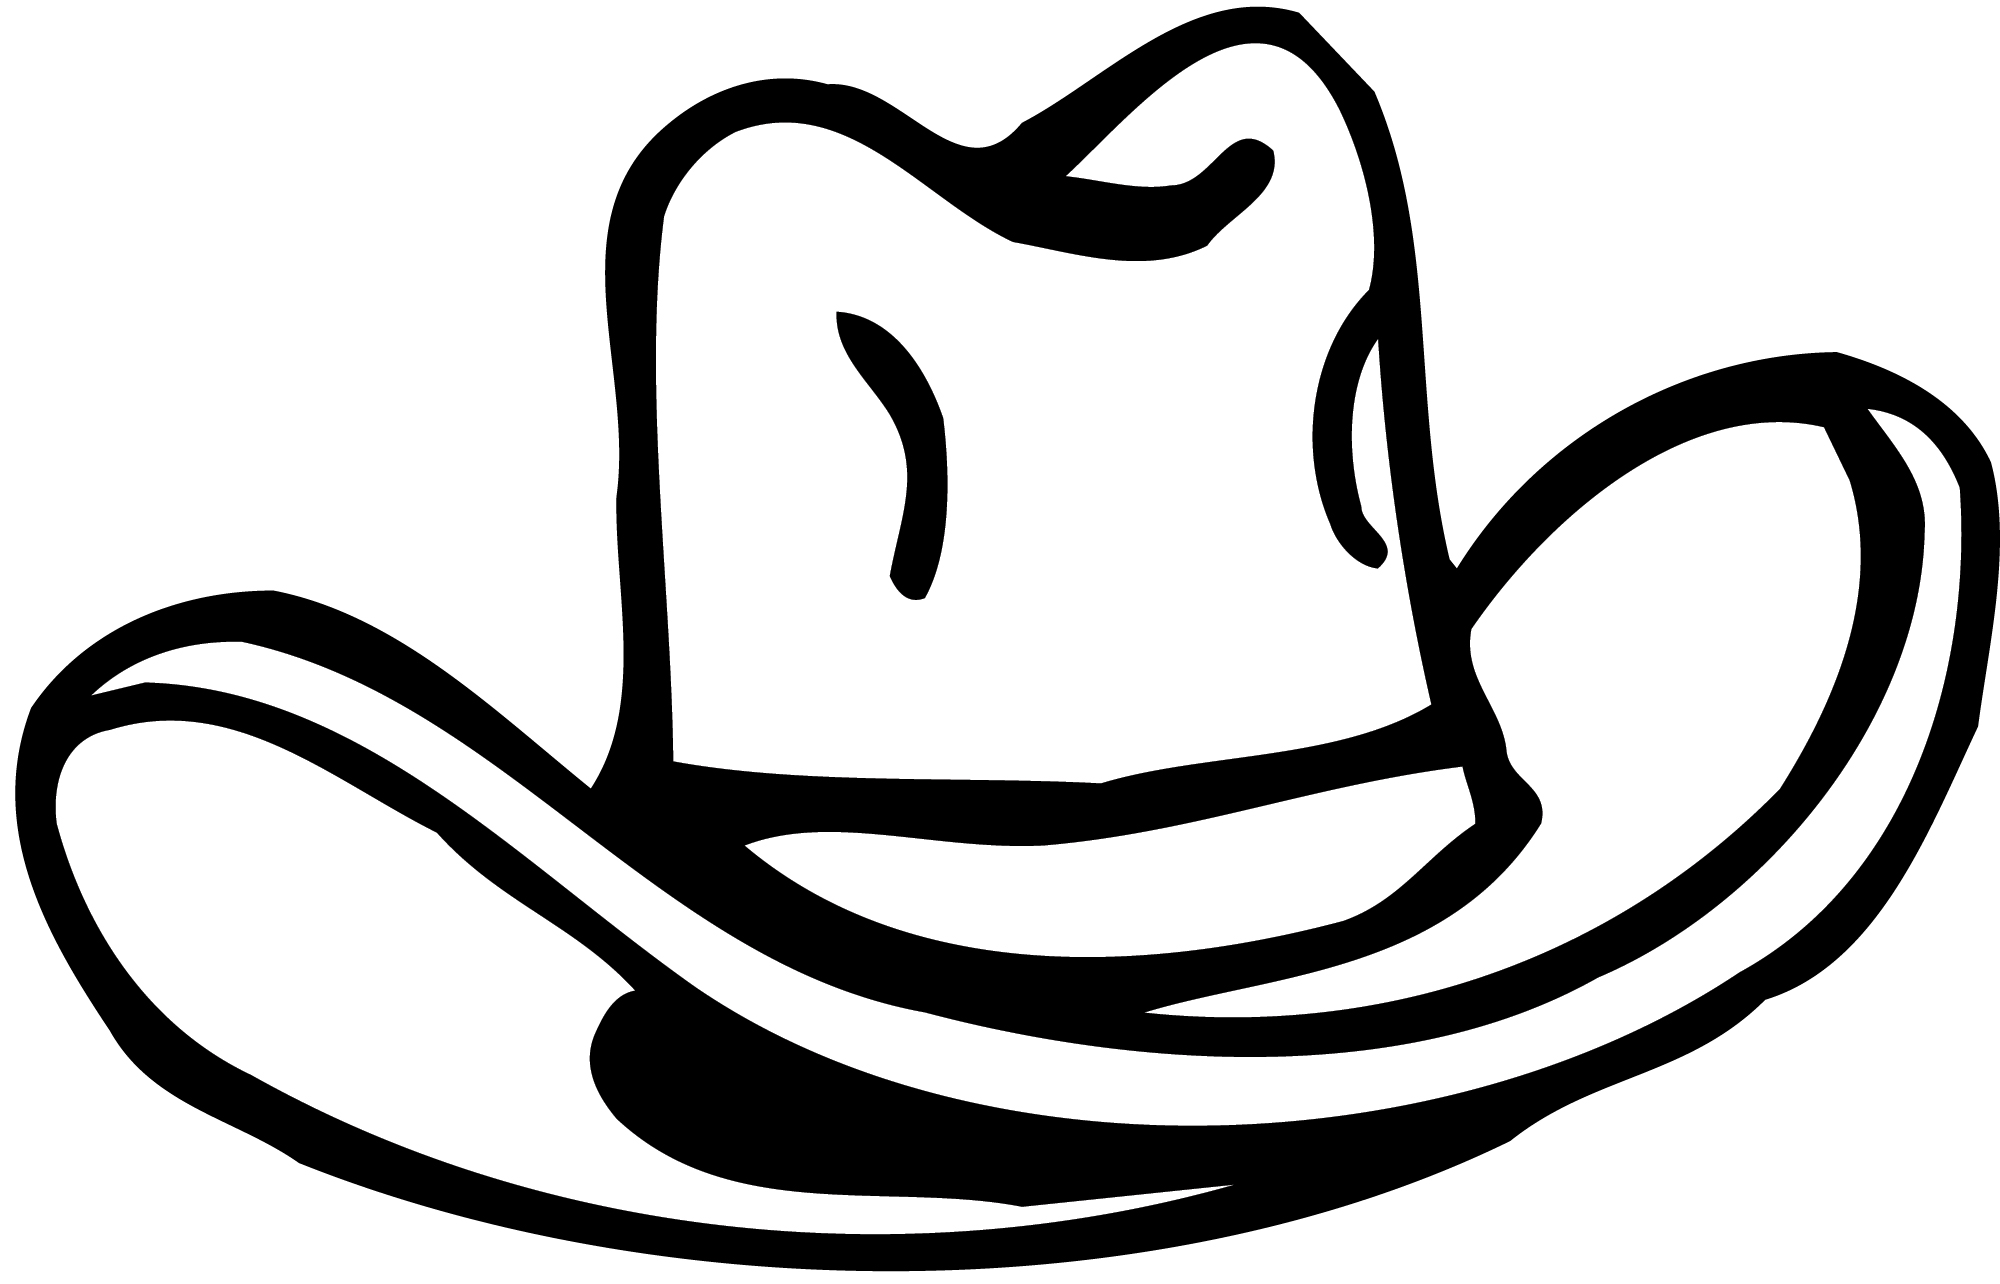 Cowboy hat wboy hat clipart 2